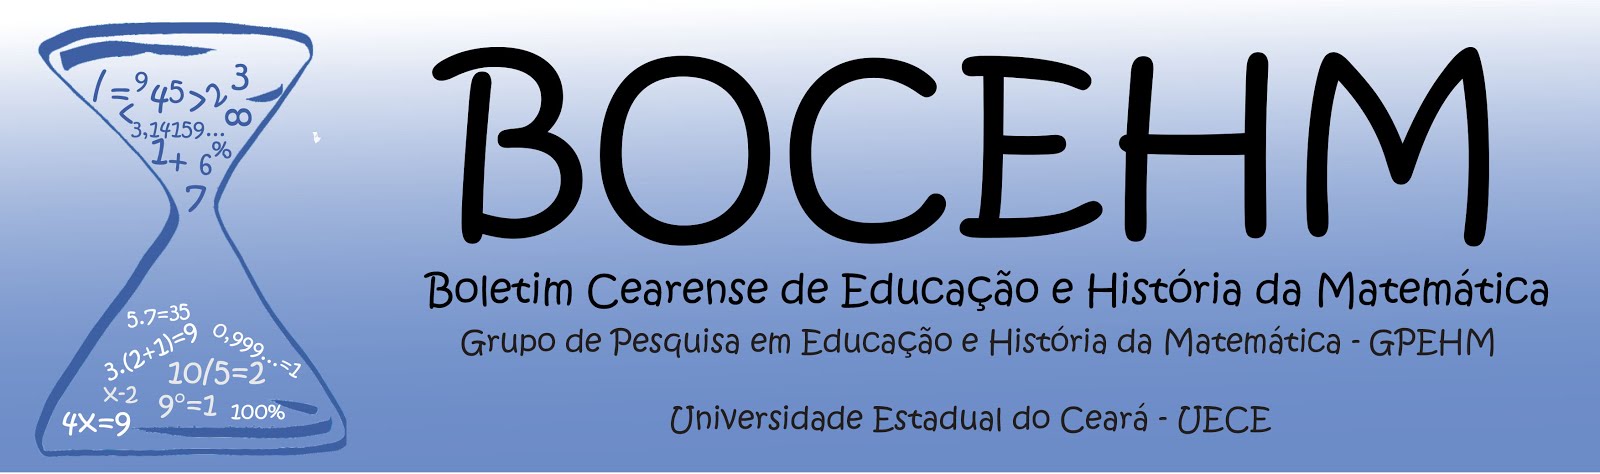 Boletim Cearense de Educação e História da Matemática (BOCEHM)